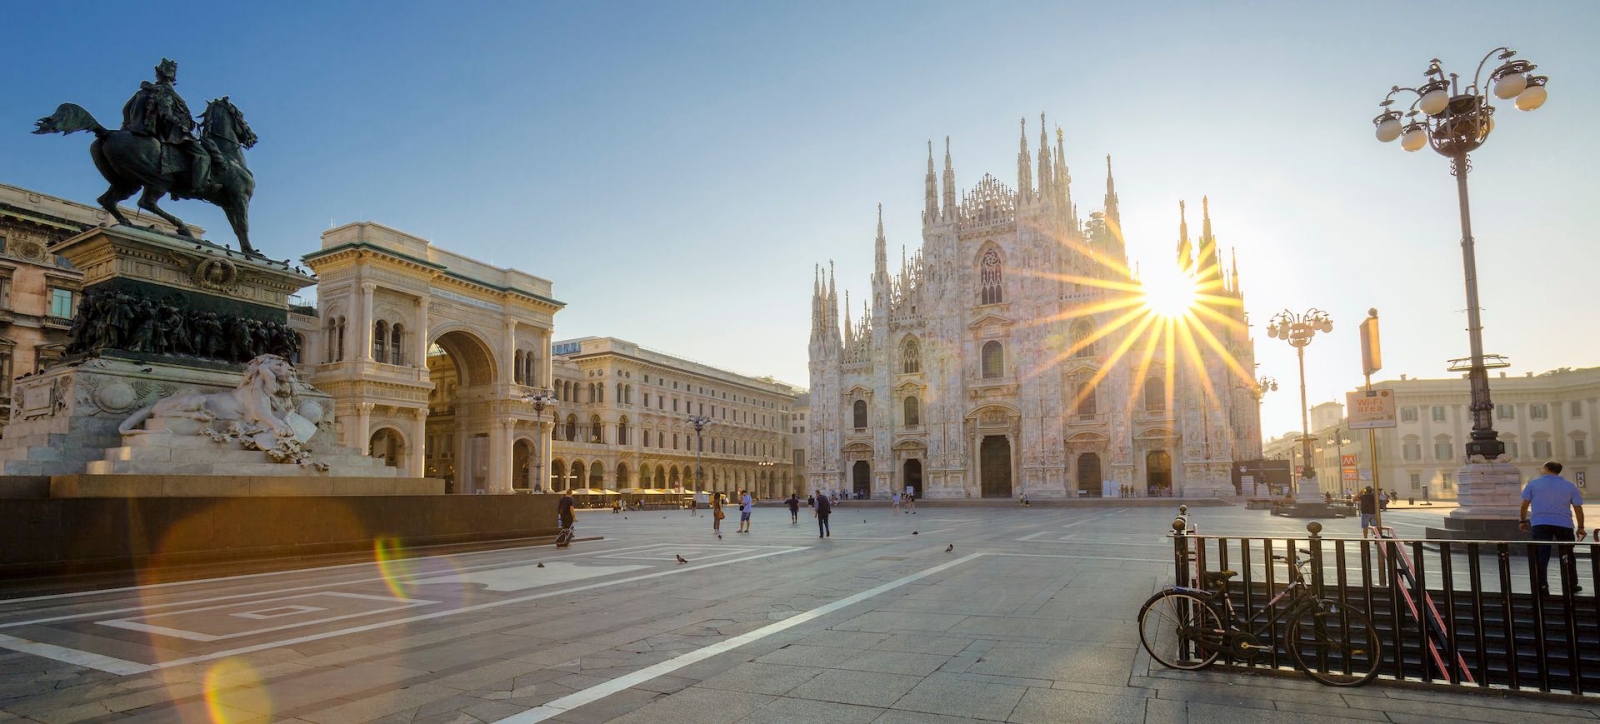 Célèbre Duomo de Milan au lever du soleil